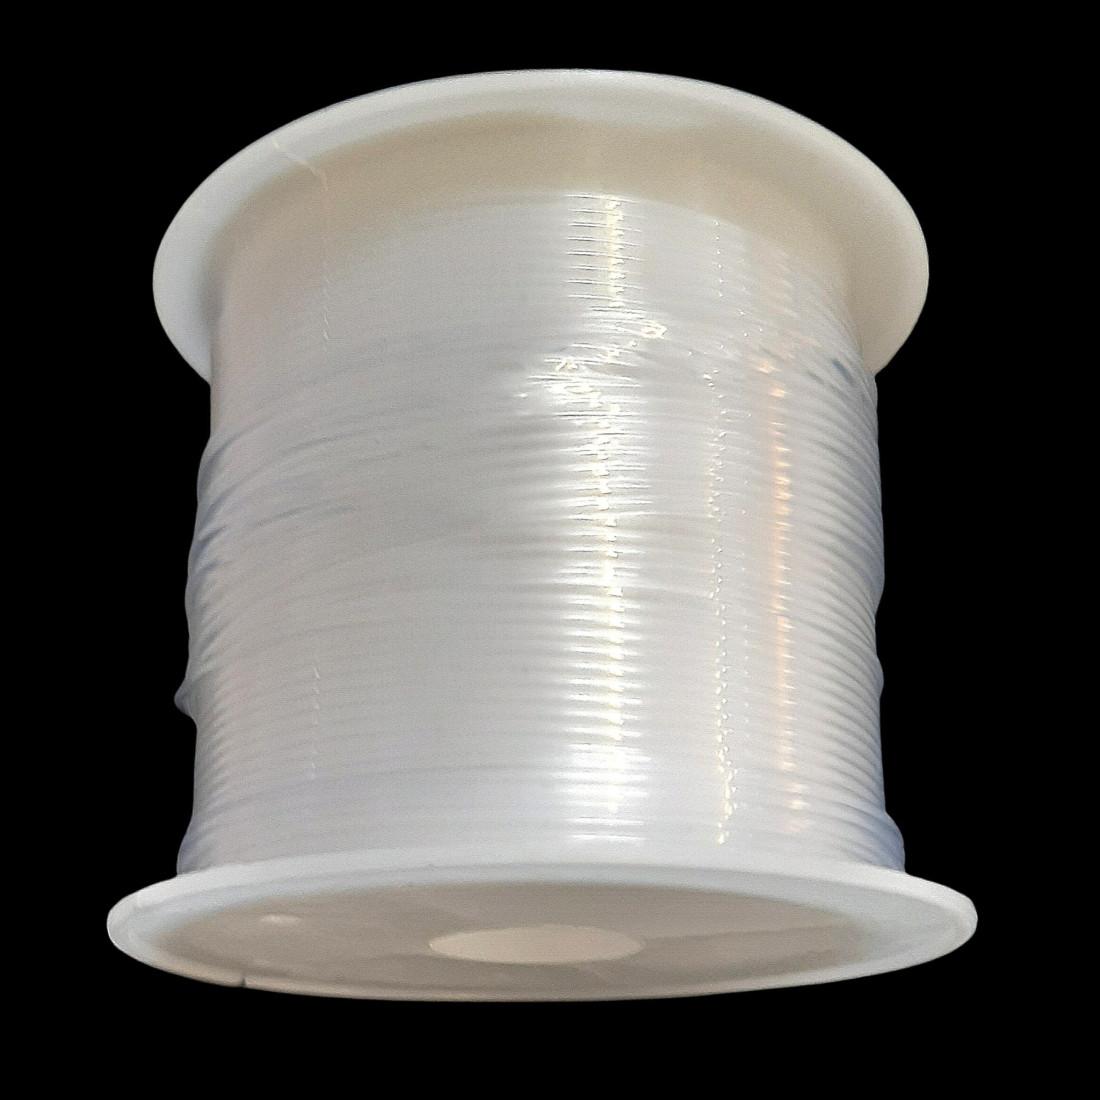 Rouleau bobine de 8 m de fil de pêche rigide en nylon cristal transparent  0,8mm